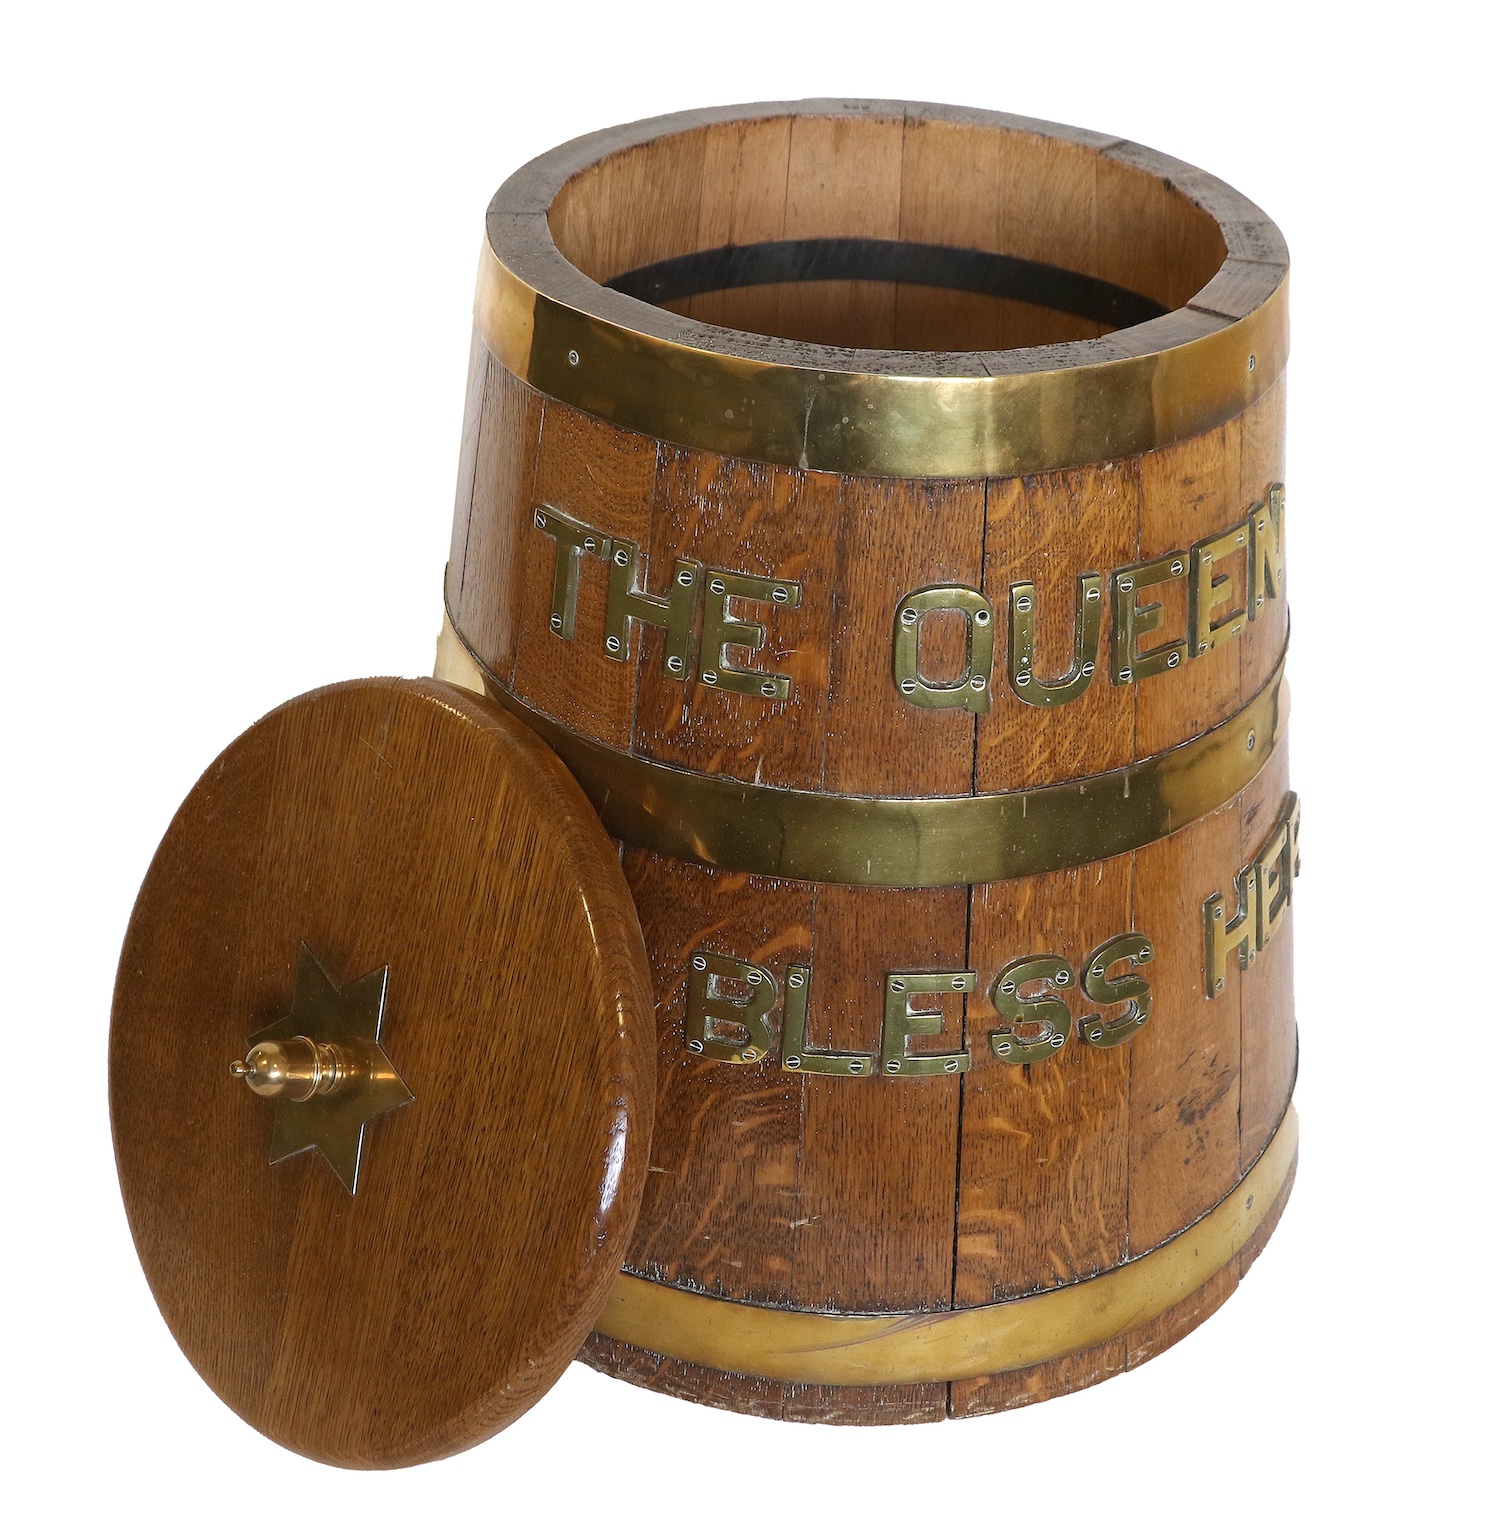 An antique oak rum tub